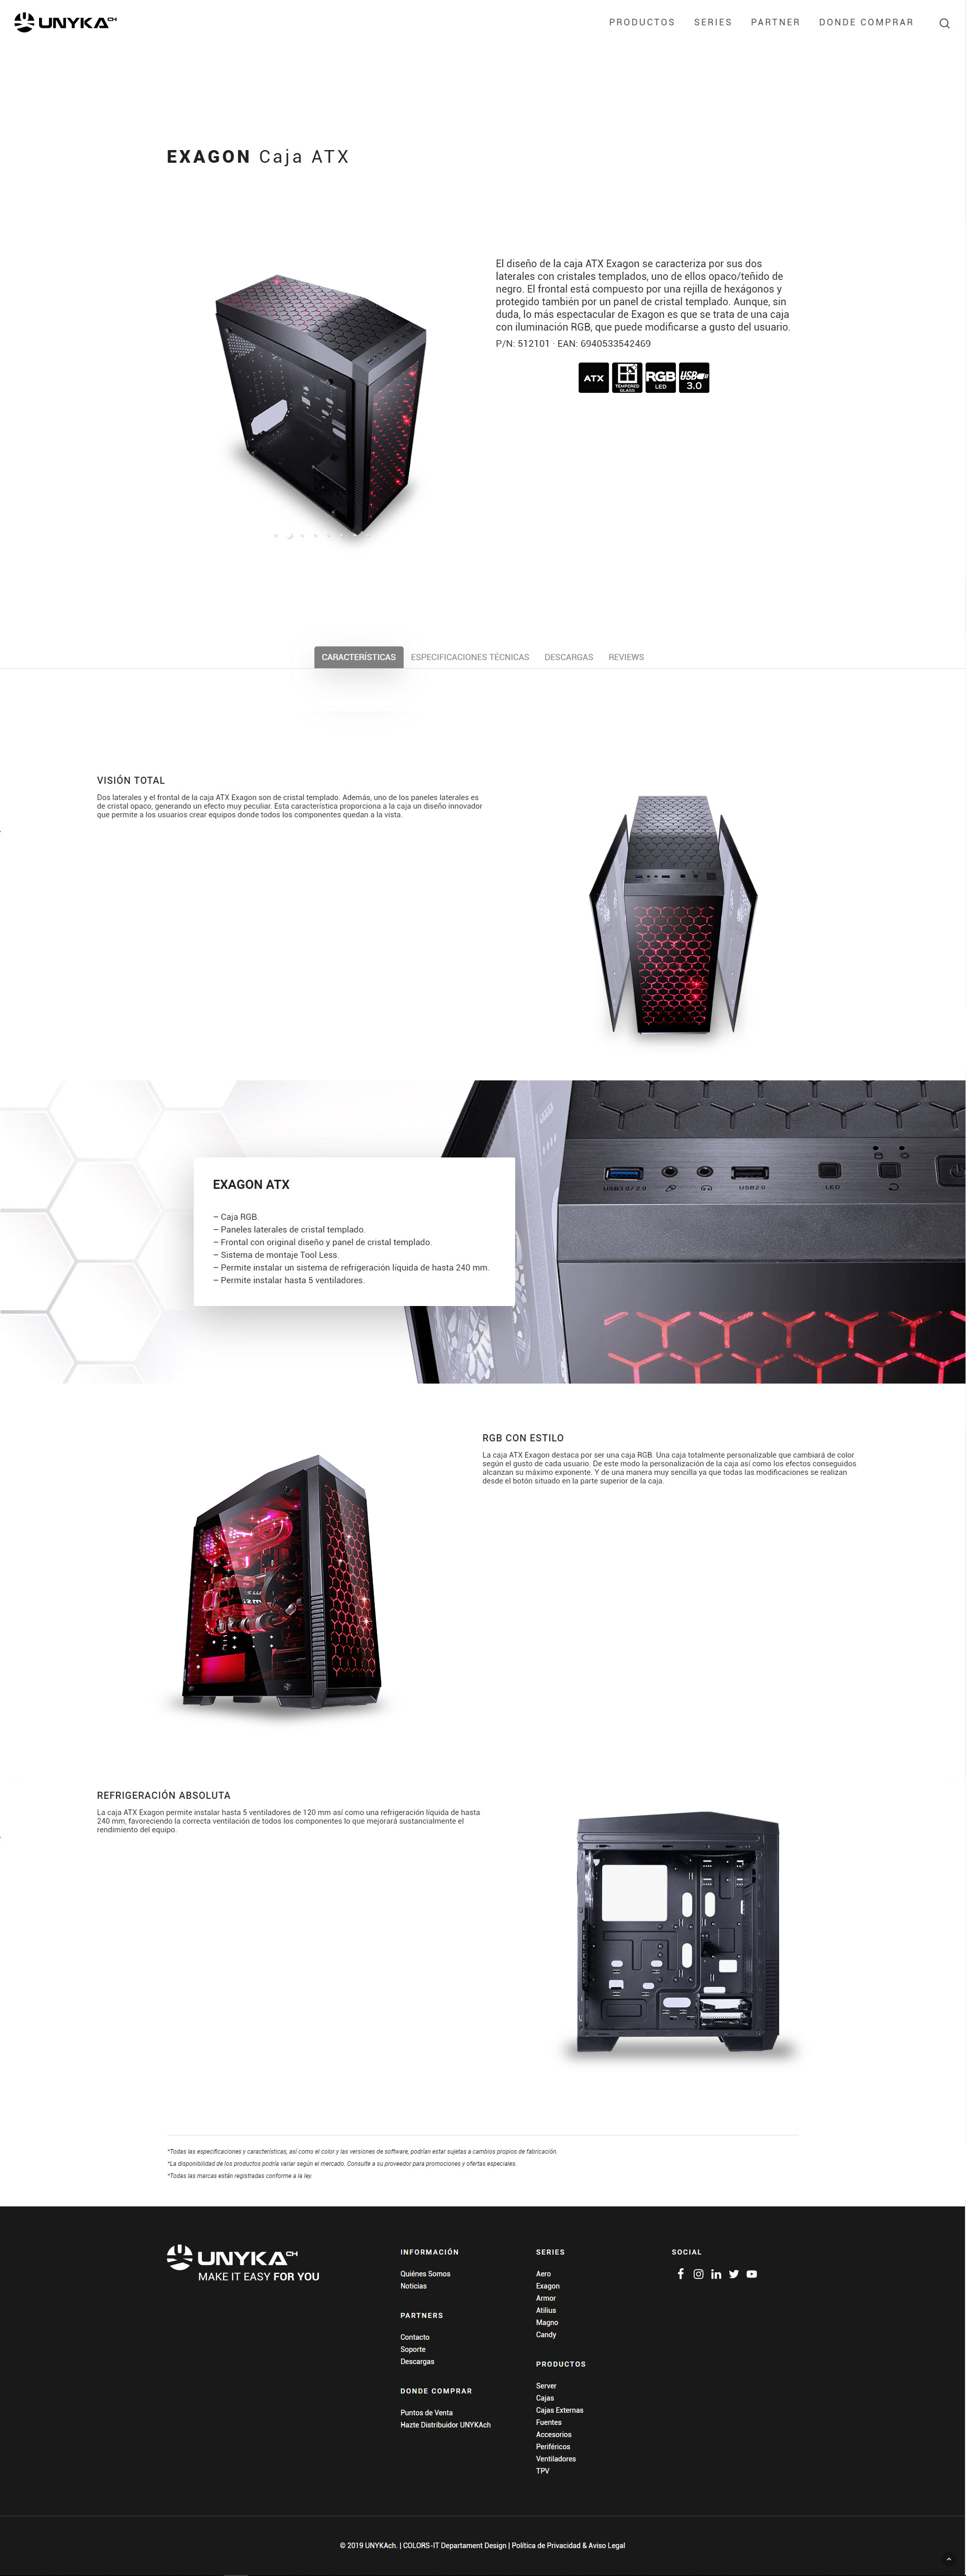 Imagen de la página de detalles del producto de la caja de ordenador con información completa y detallada sobre el tamaño, capacidad, diseño y especificaciones técnicas.